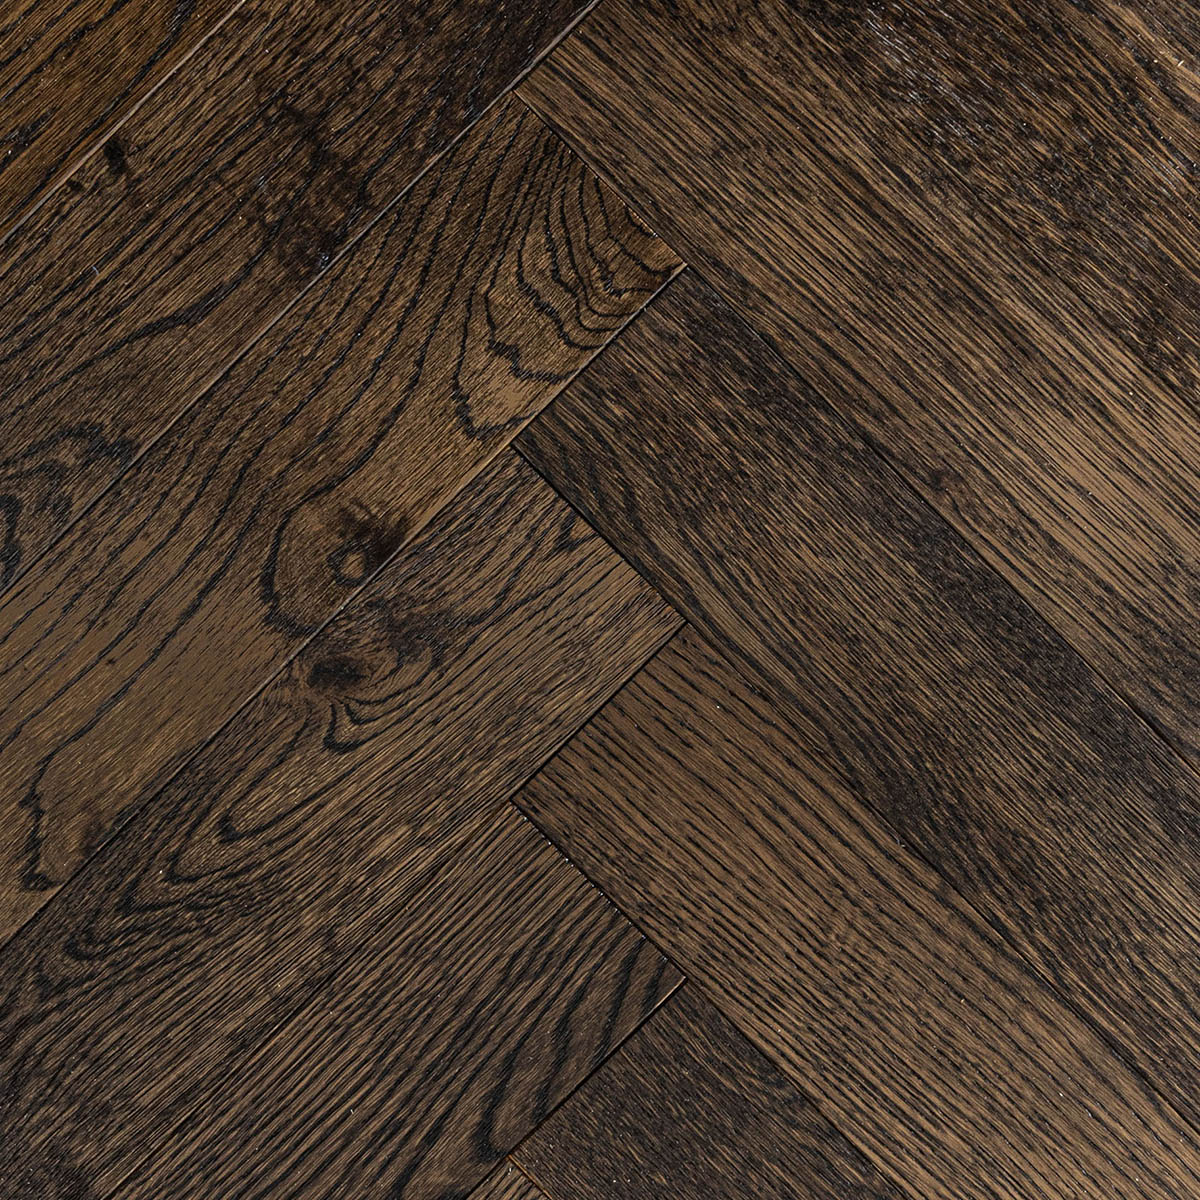 Hockley Croft - Chocolate Herringbone Engineered Oak Floor